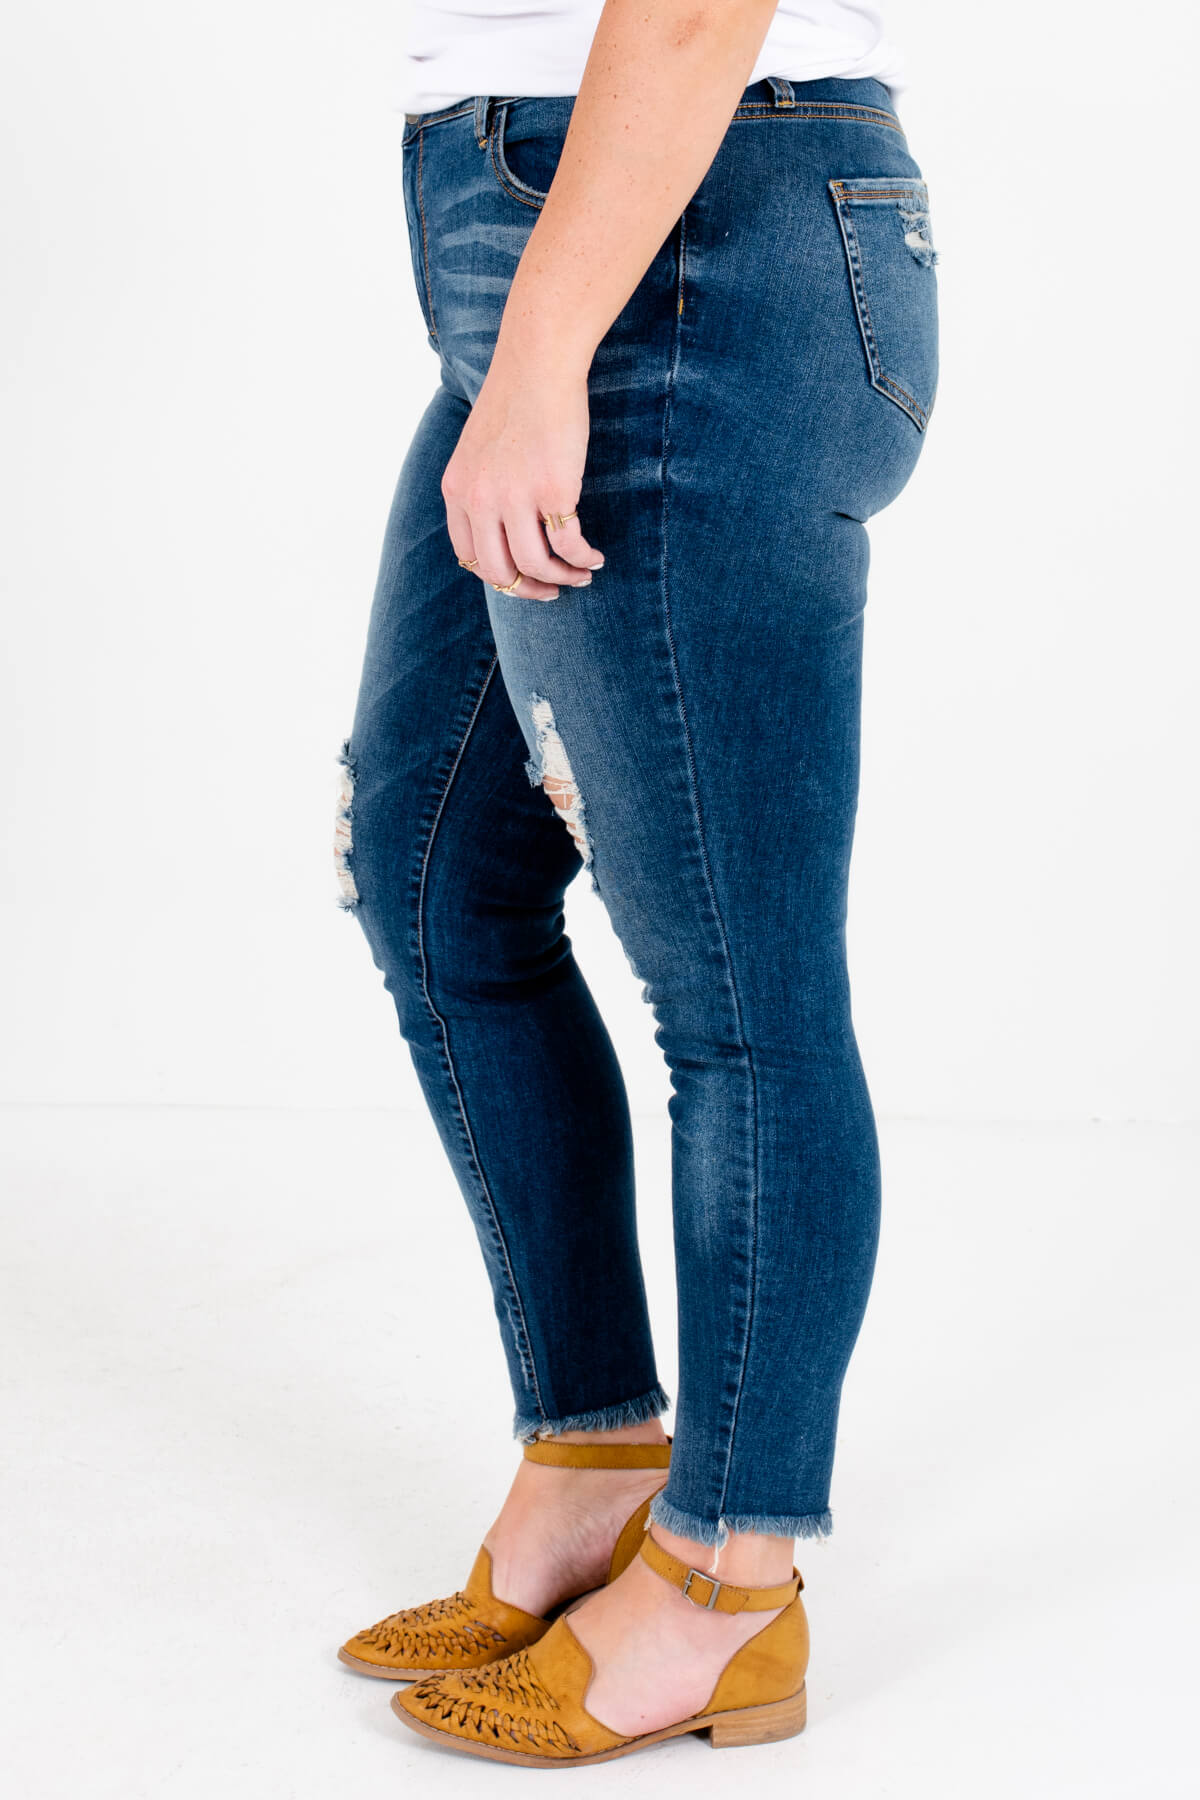 Medium Wash Blue Denim Plus Size Boutique Jeans with Pockets